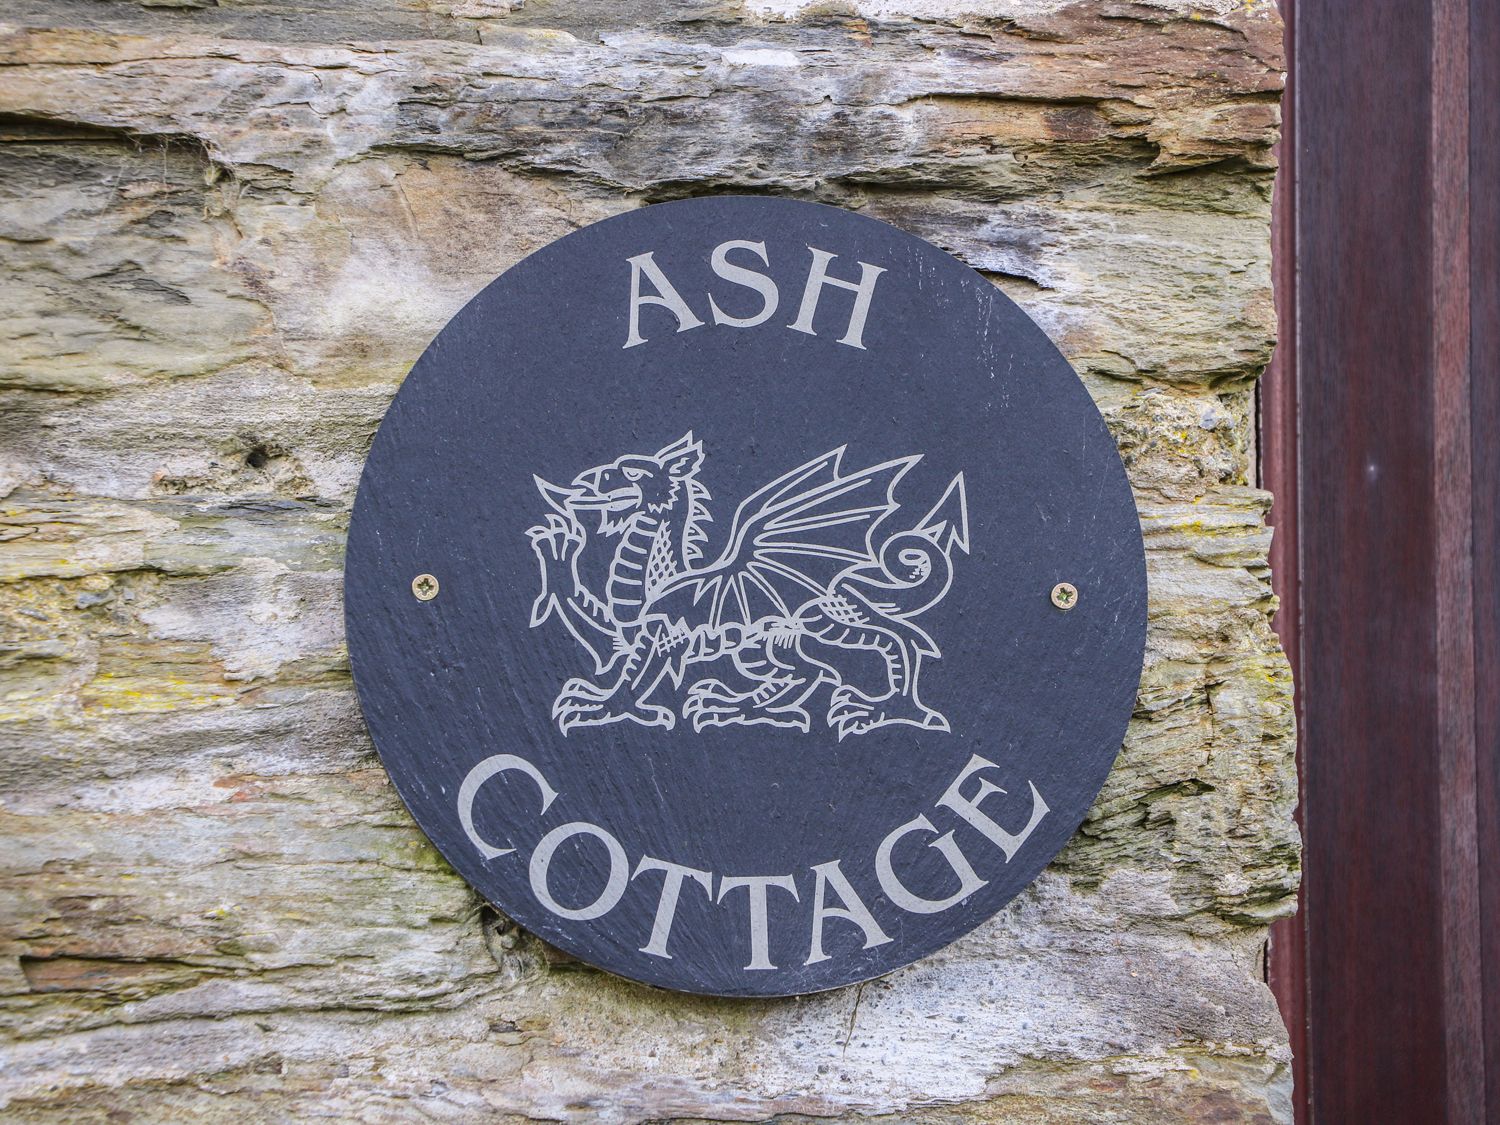 Ash Cottage, Wales